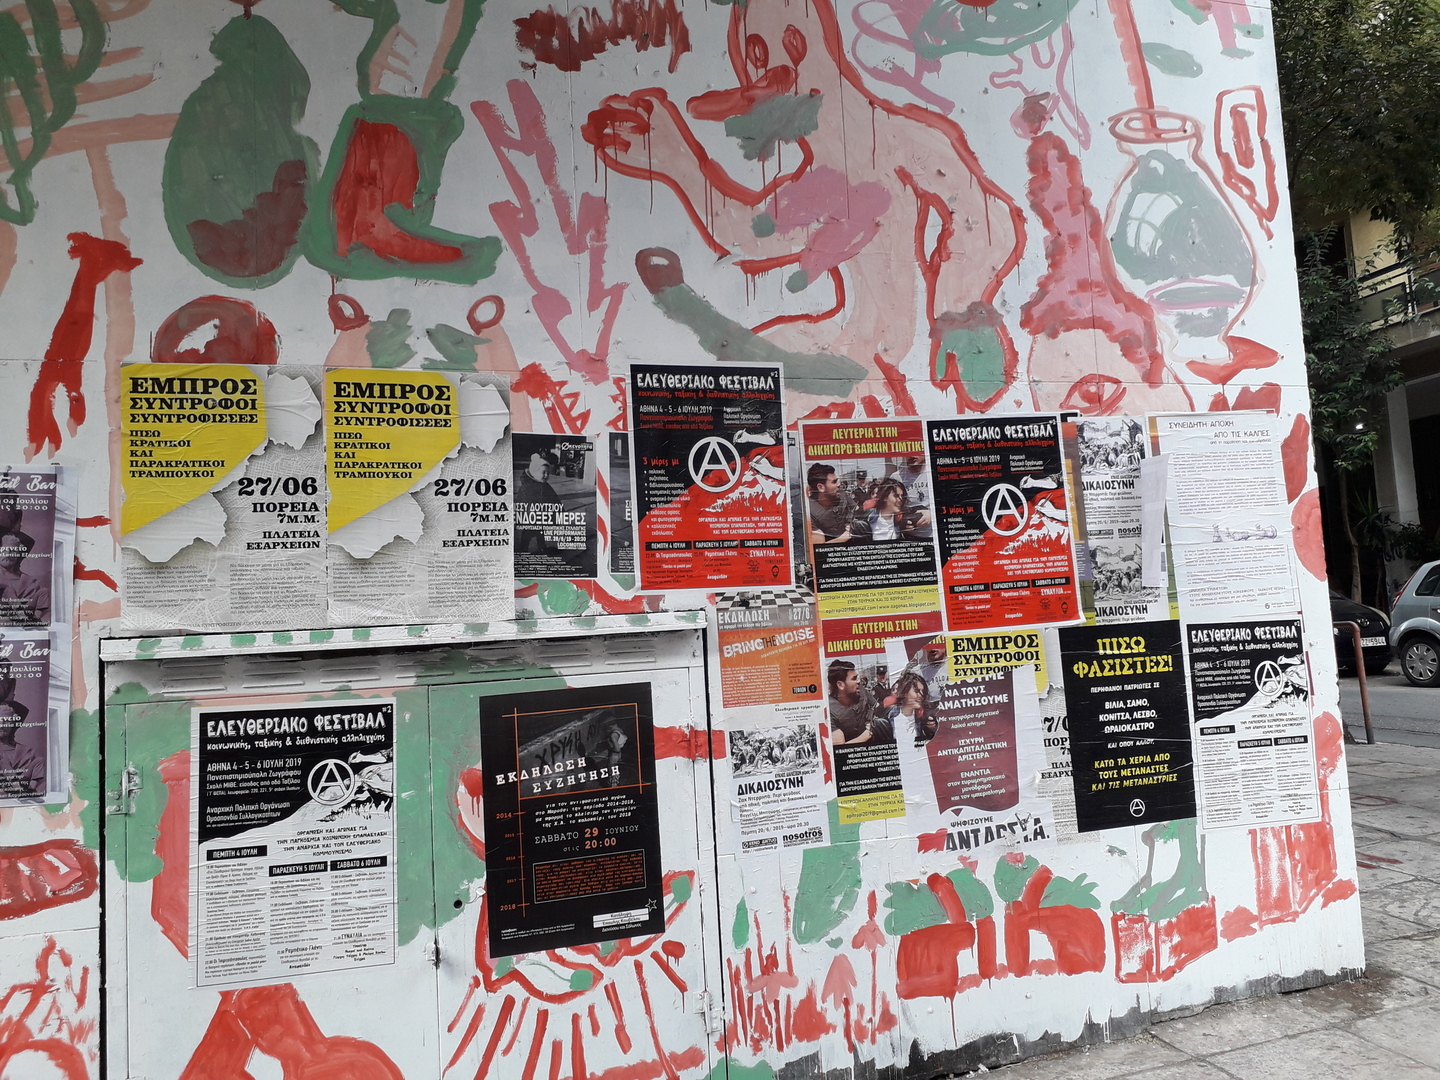 Mur avec des peintures et des affiches dont la plupart des contenus sont anarchistes